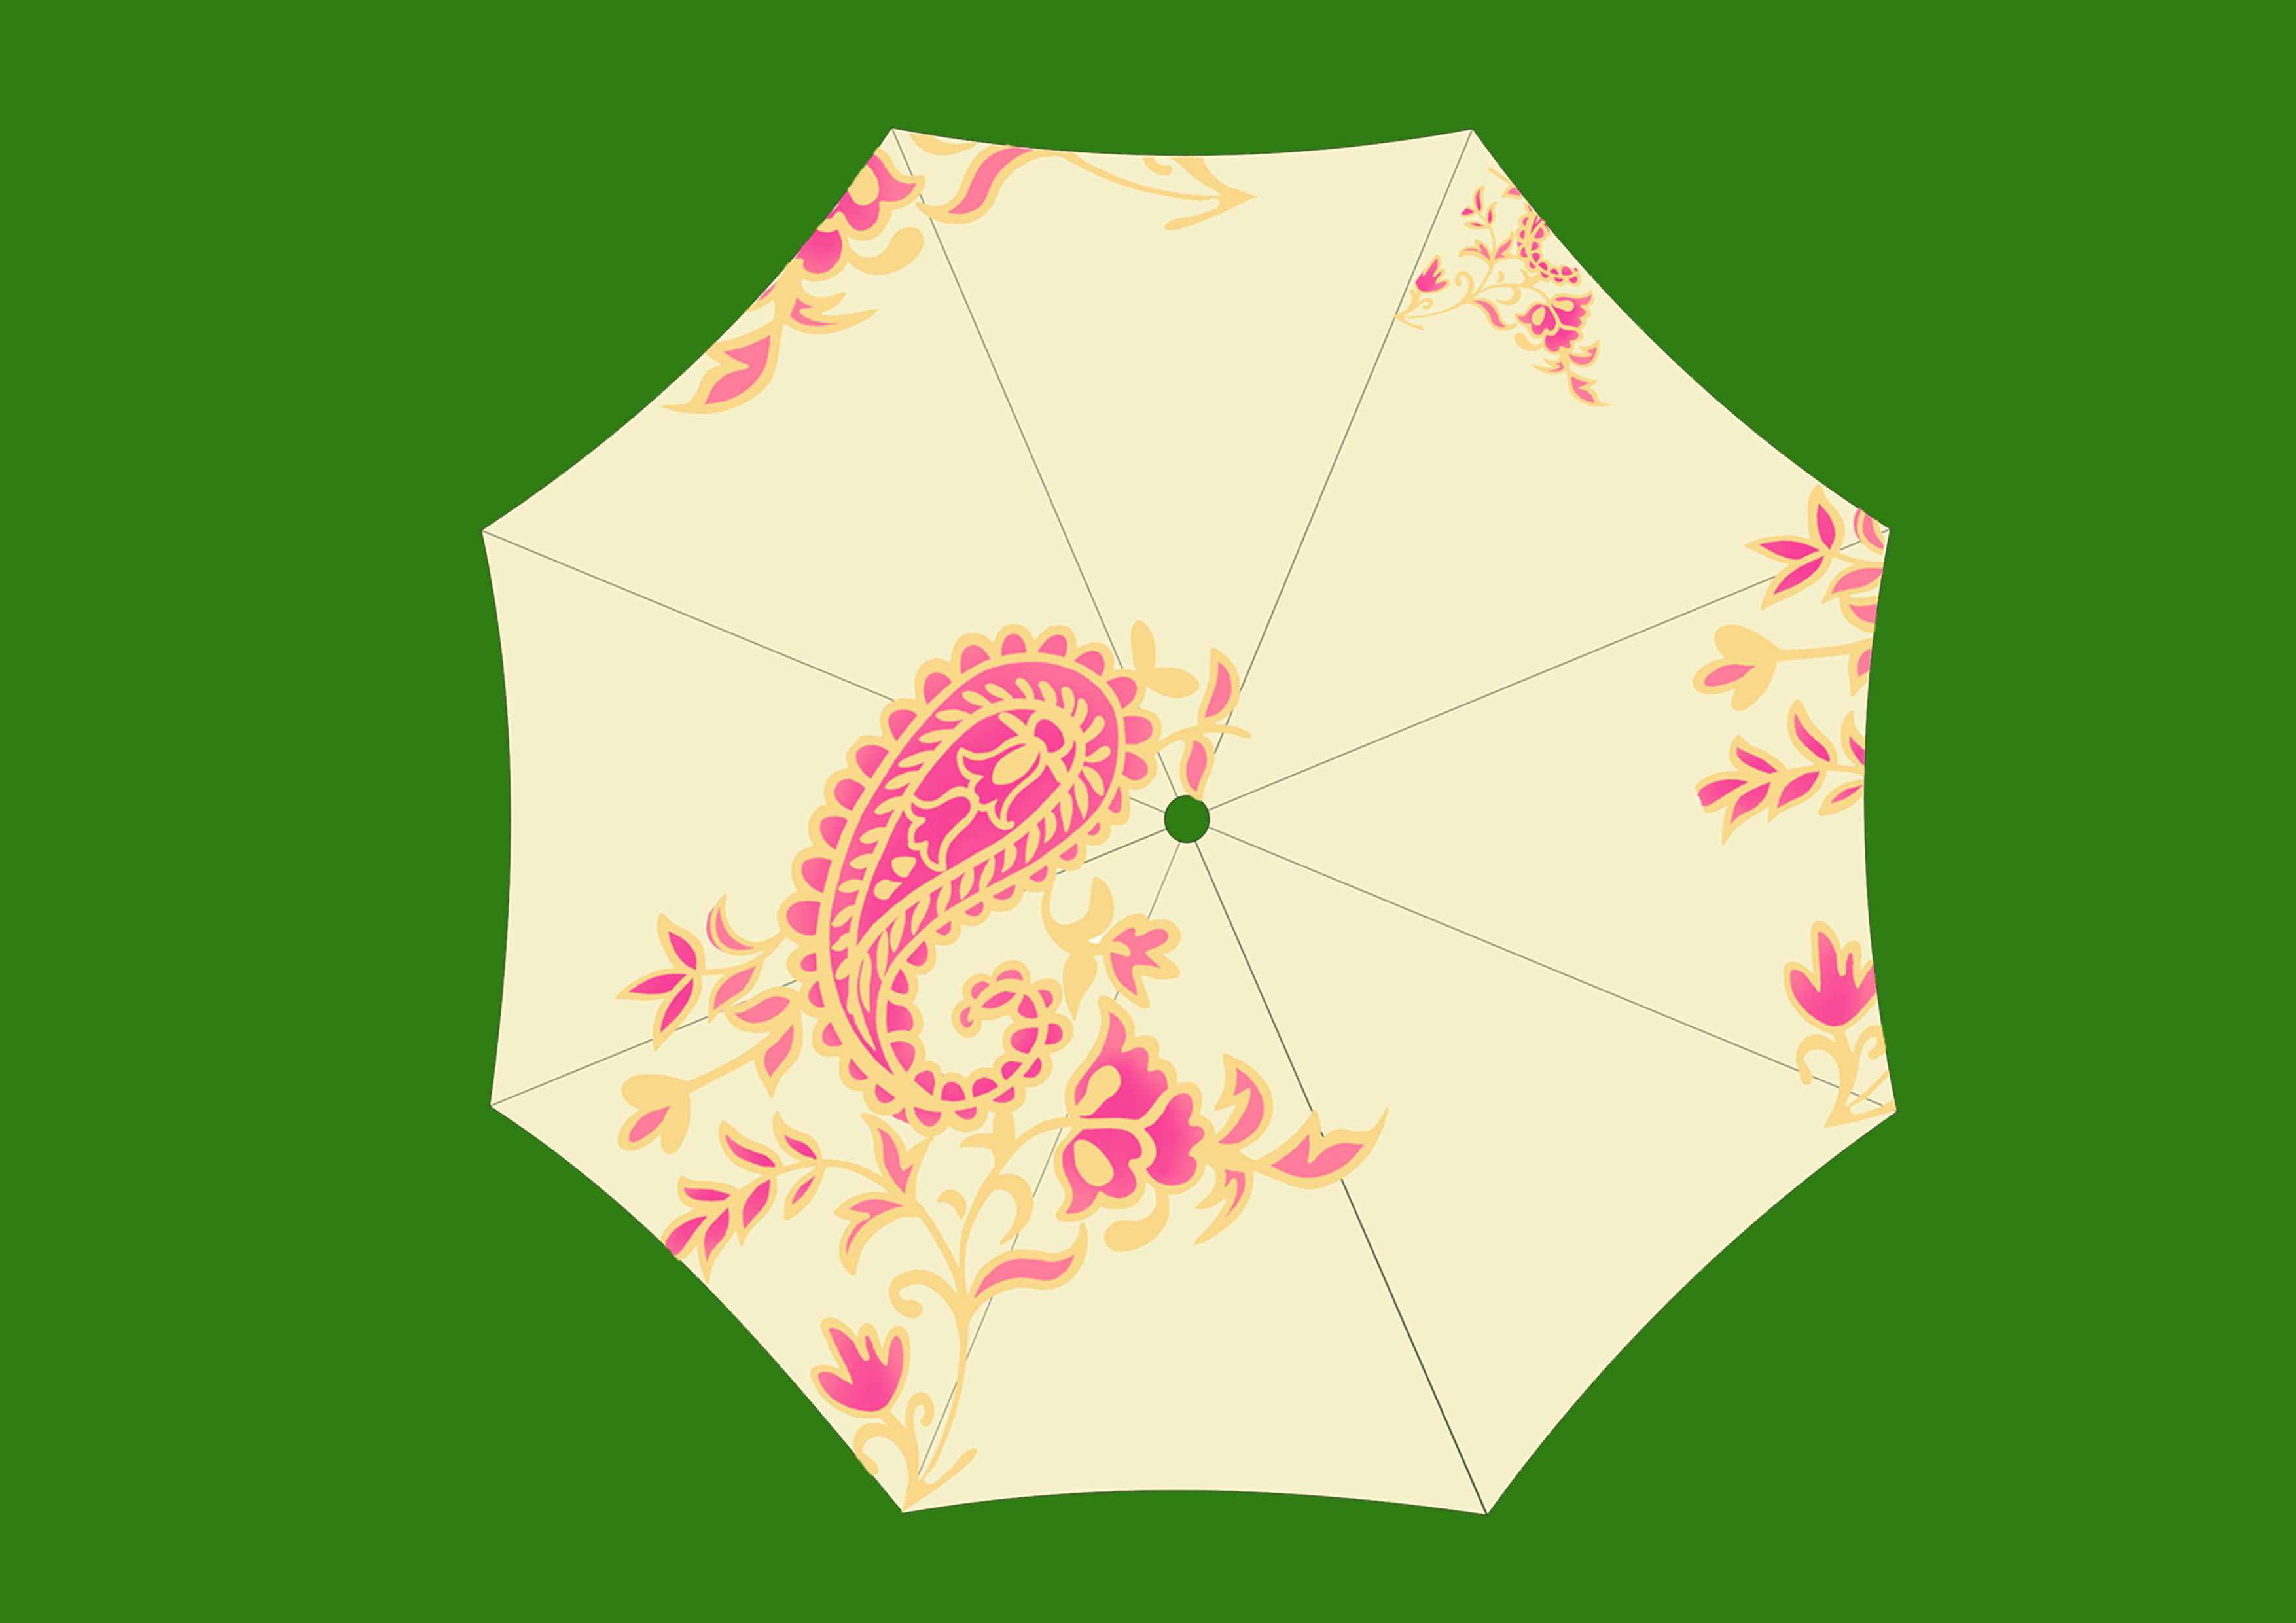 设计一批时尚晴雨伞的伞面(平面设计)